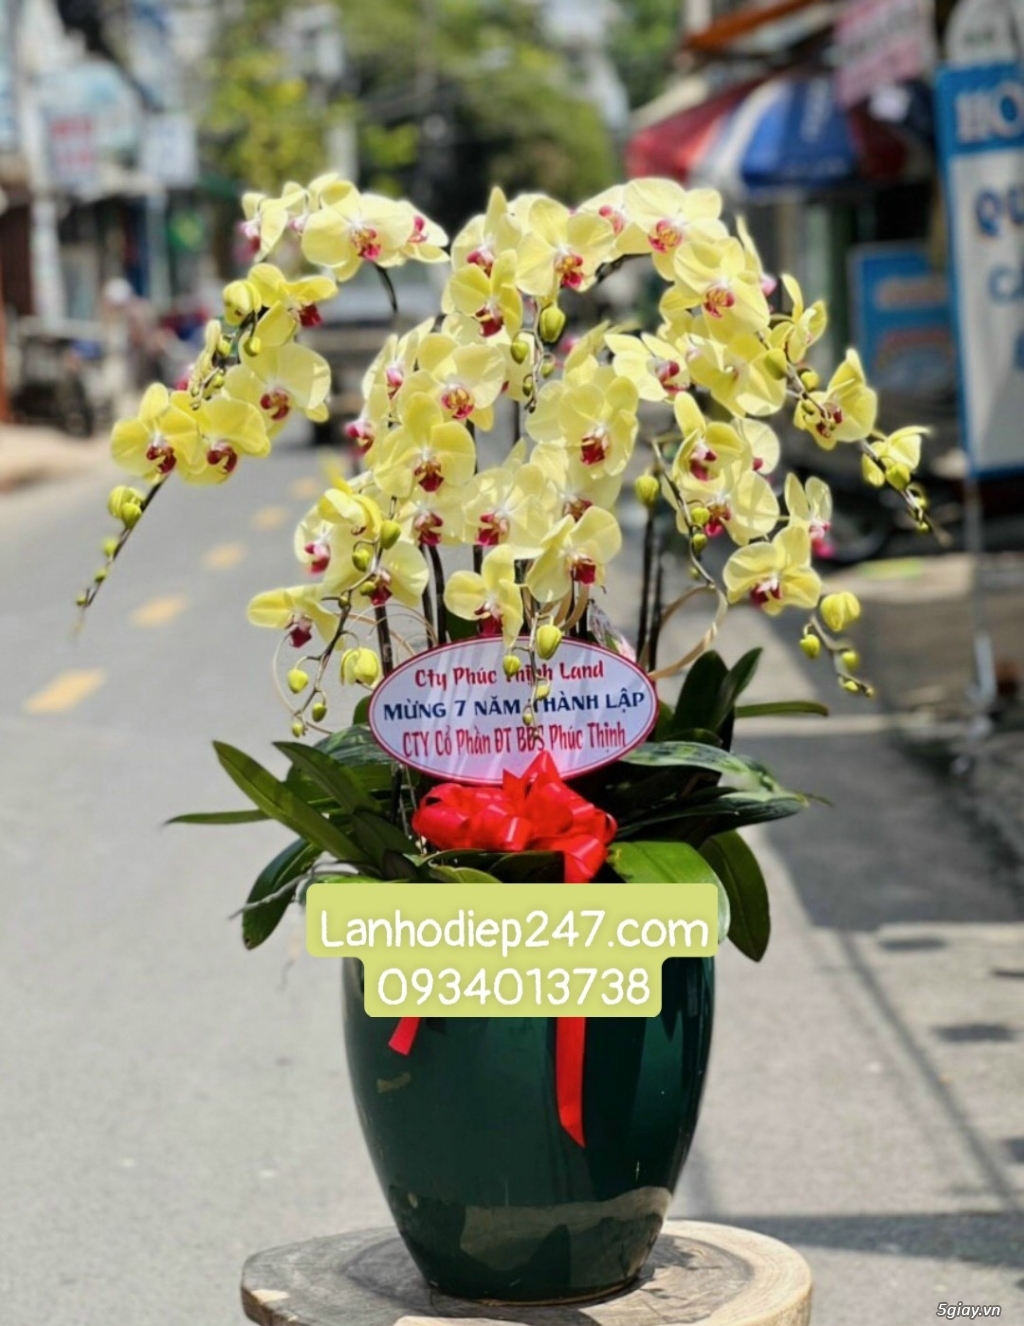 Shop hoa tươi lan hồ điệp quận 2 uy tín tphcm 0934013738 - 14